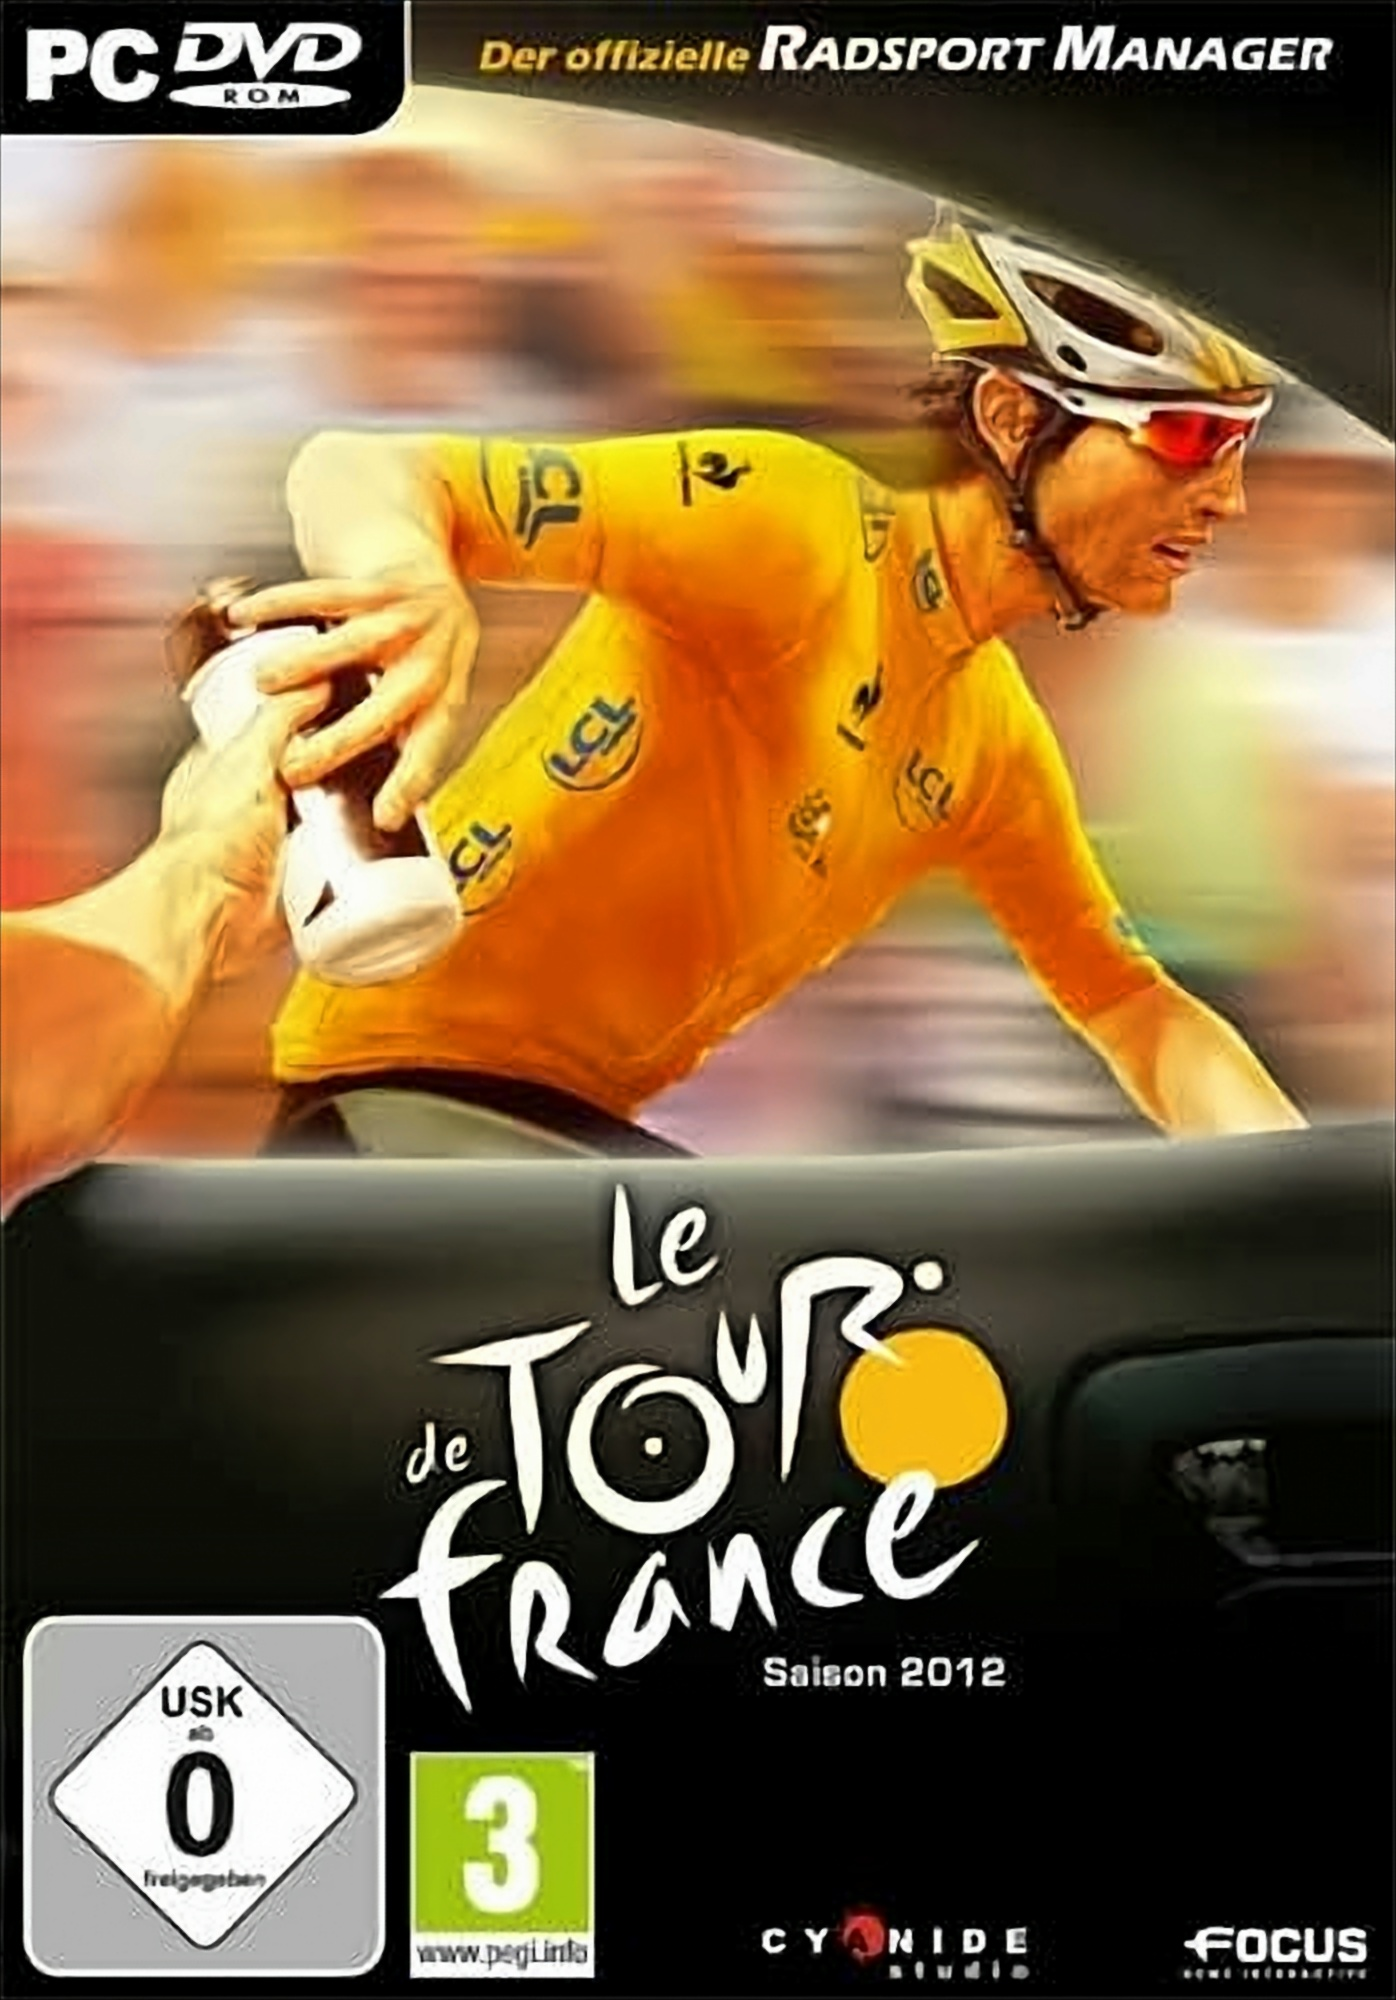 France de - Le Tour Manager offizielle Radsport 2012 - [PC] Der